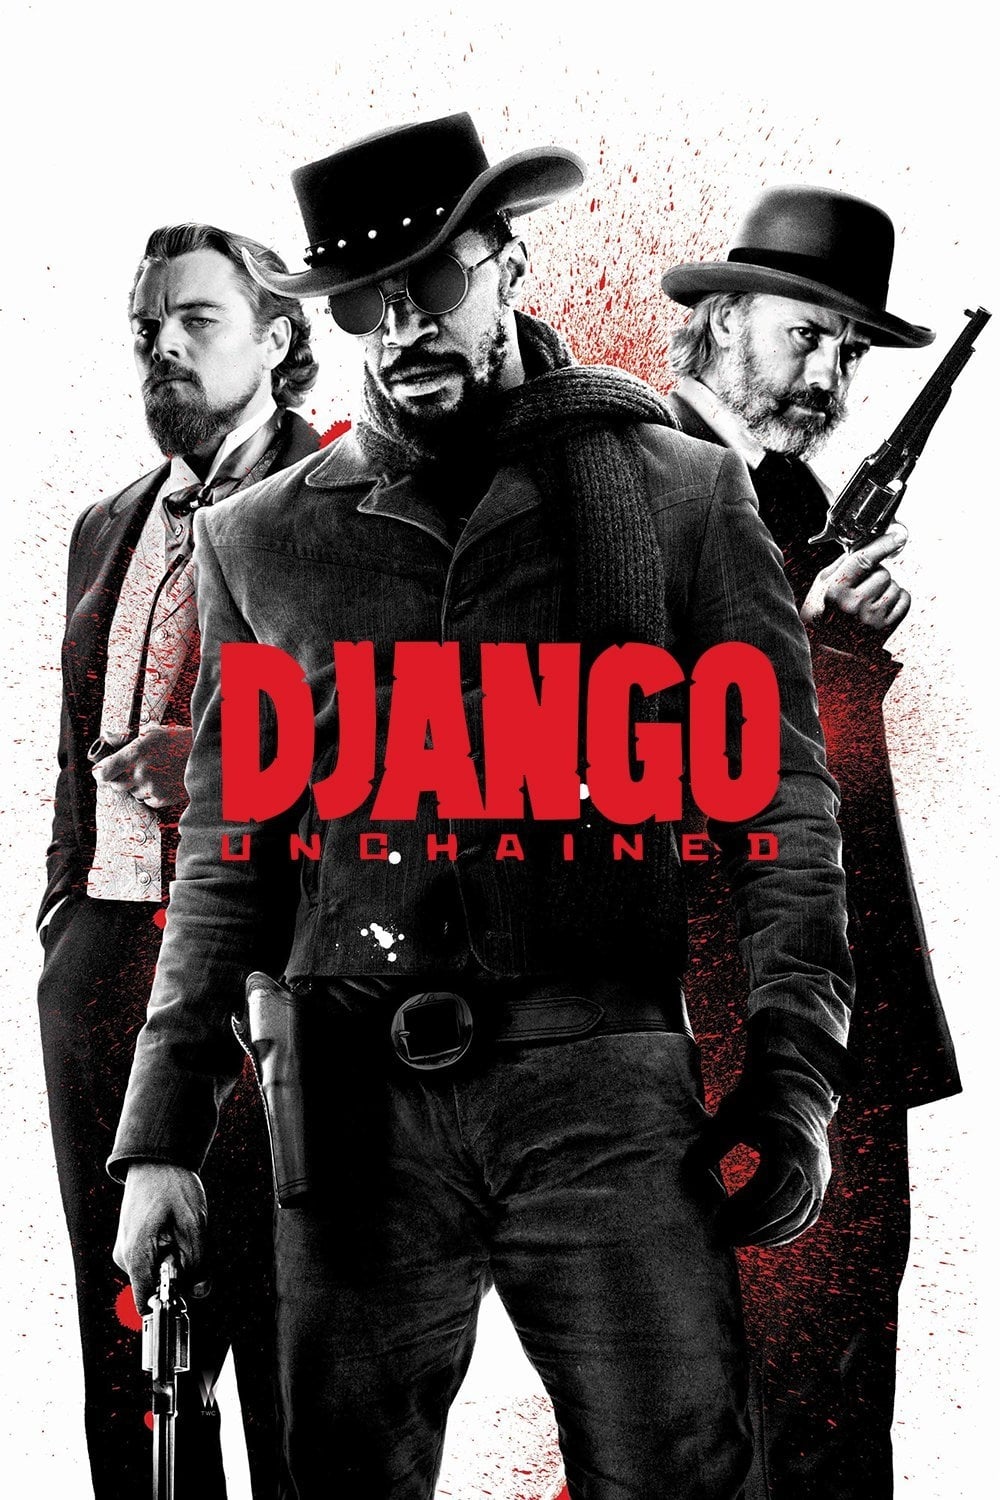 Affiche du film "Django Unchained"